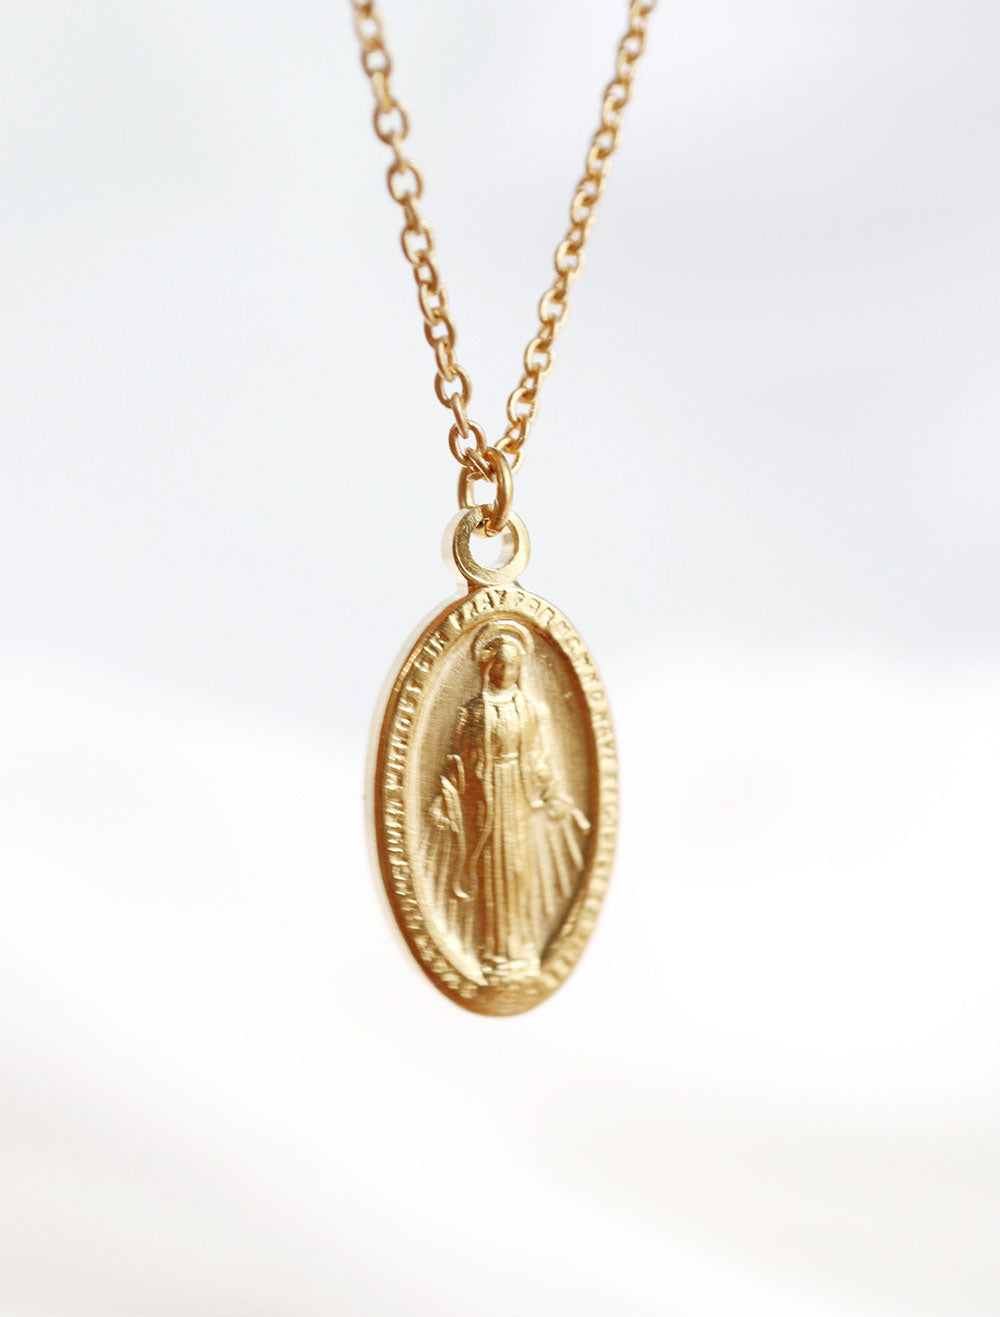 Veritas Virgin Mary Necklace – Beyond Hype Premier Streetwear